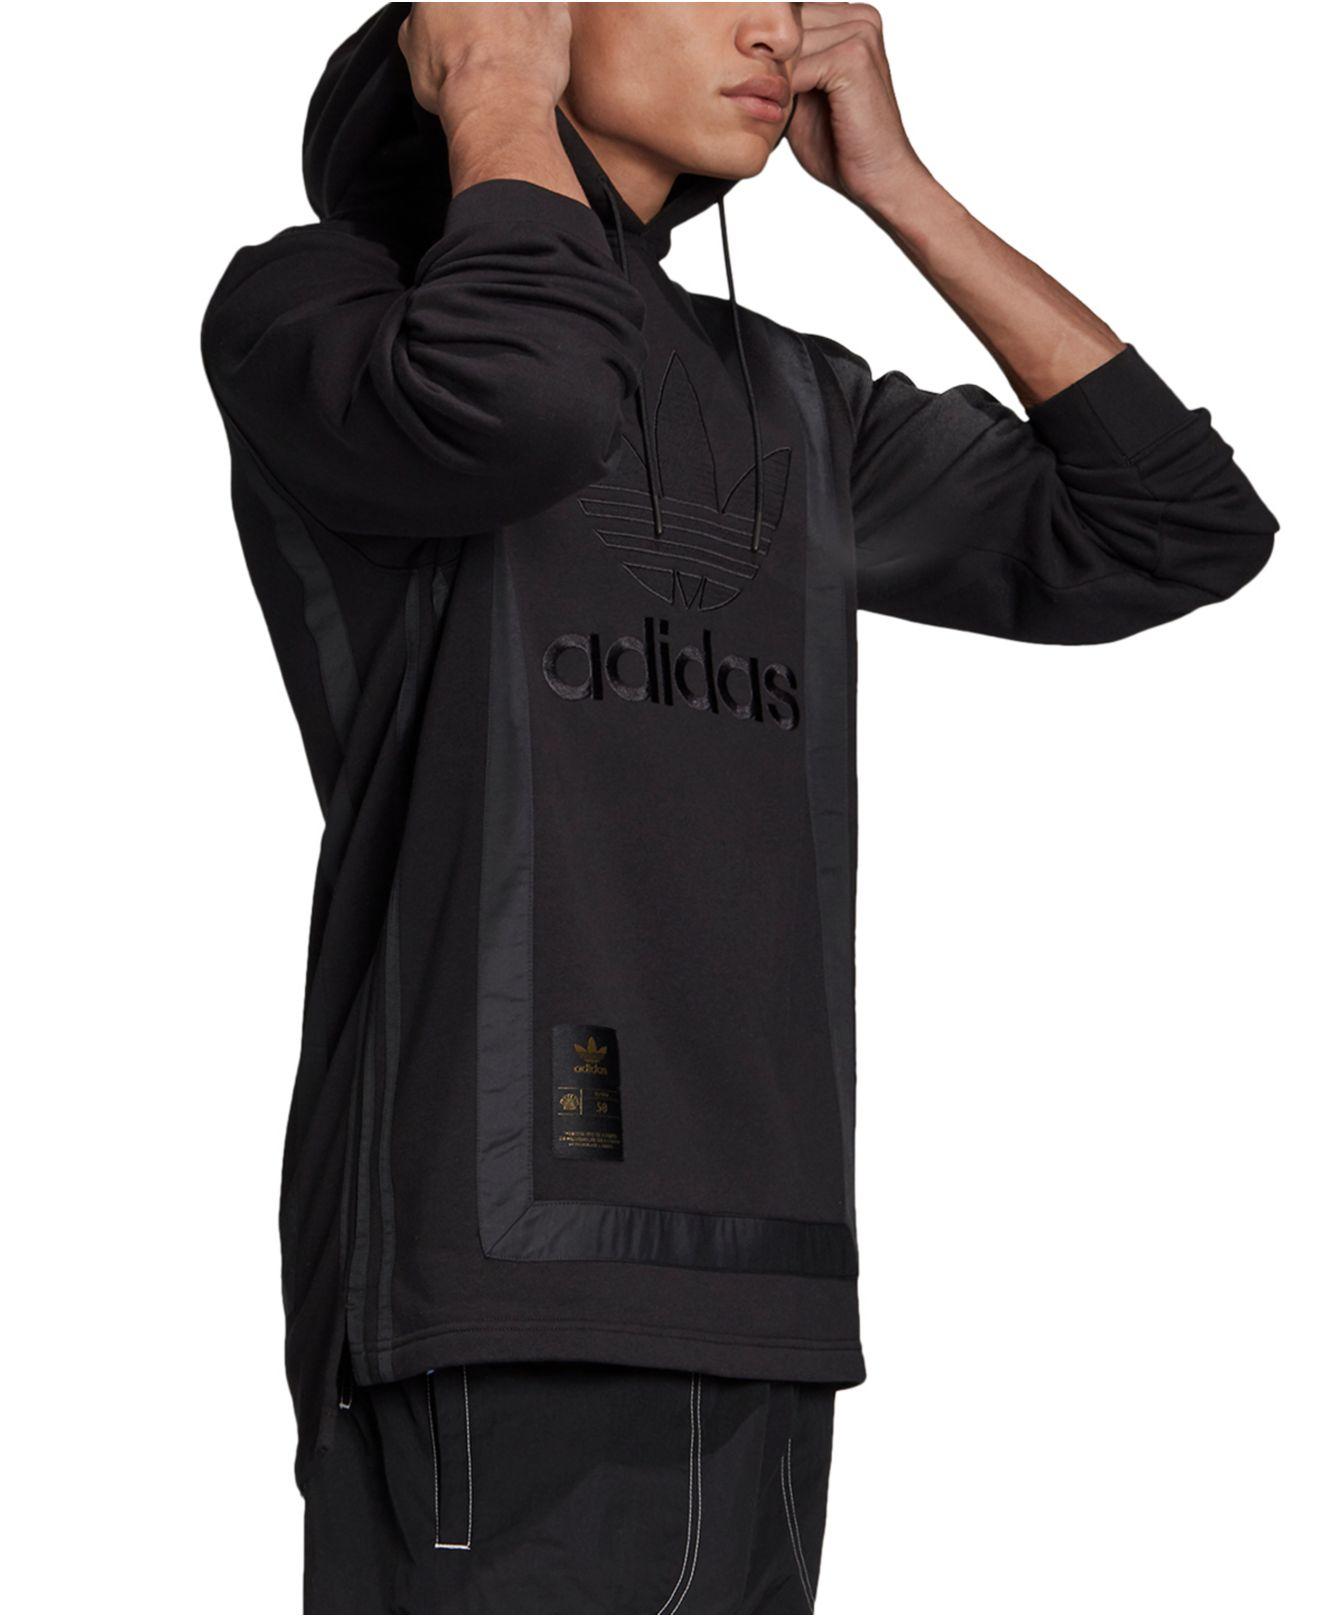 adidas originals superstar warm up hoodie in black